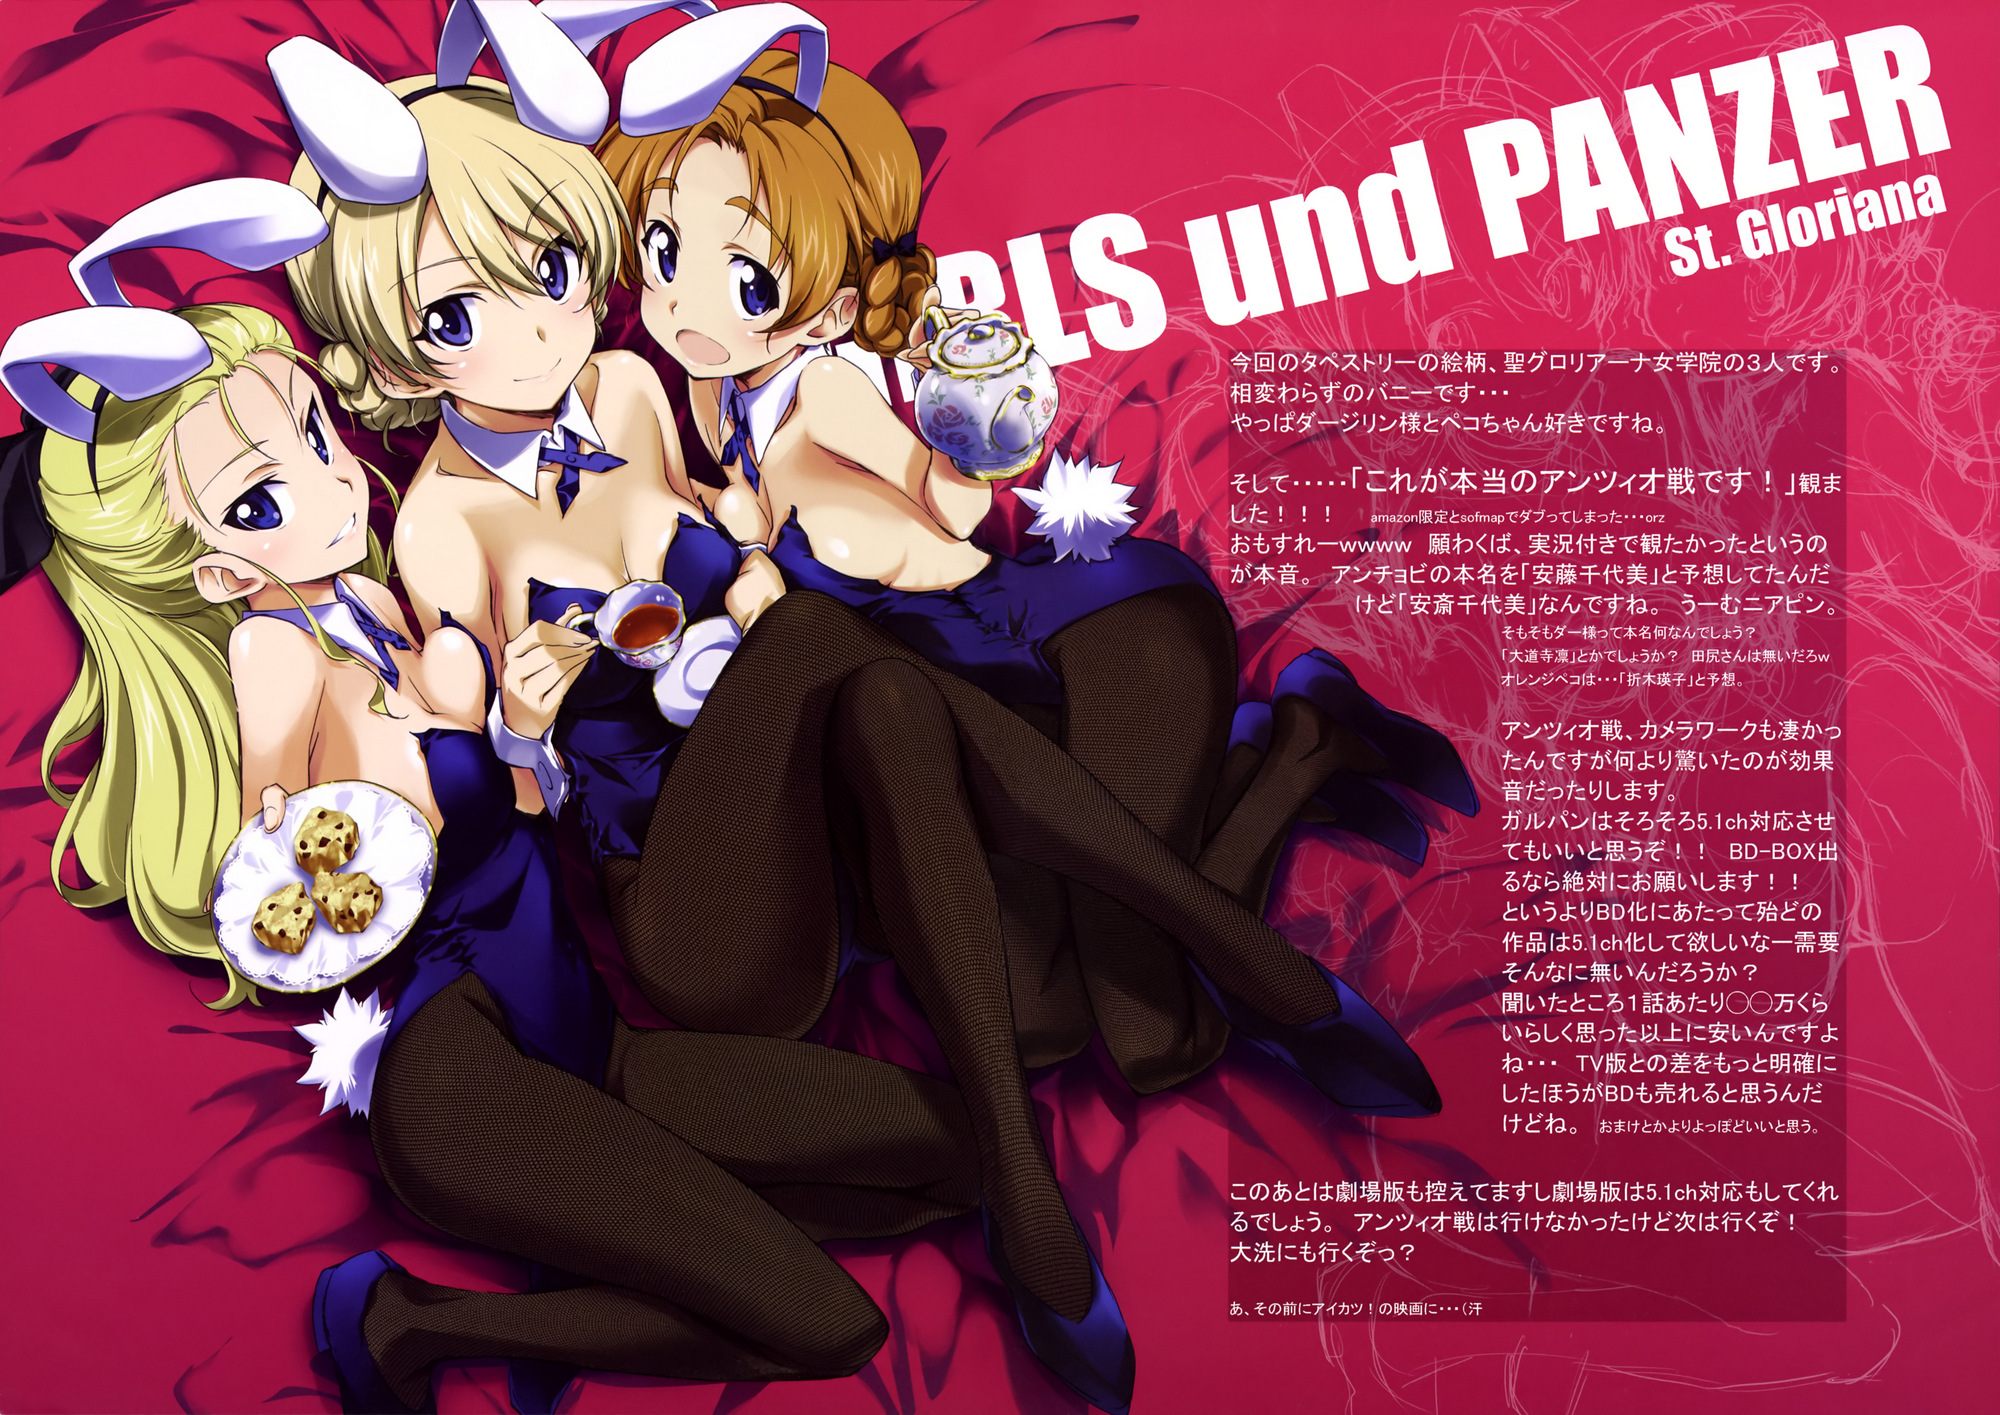 Girls und Panzer Artbook (Kurashima Tomoyasu) (JPG)